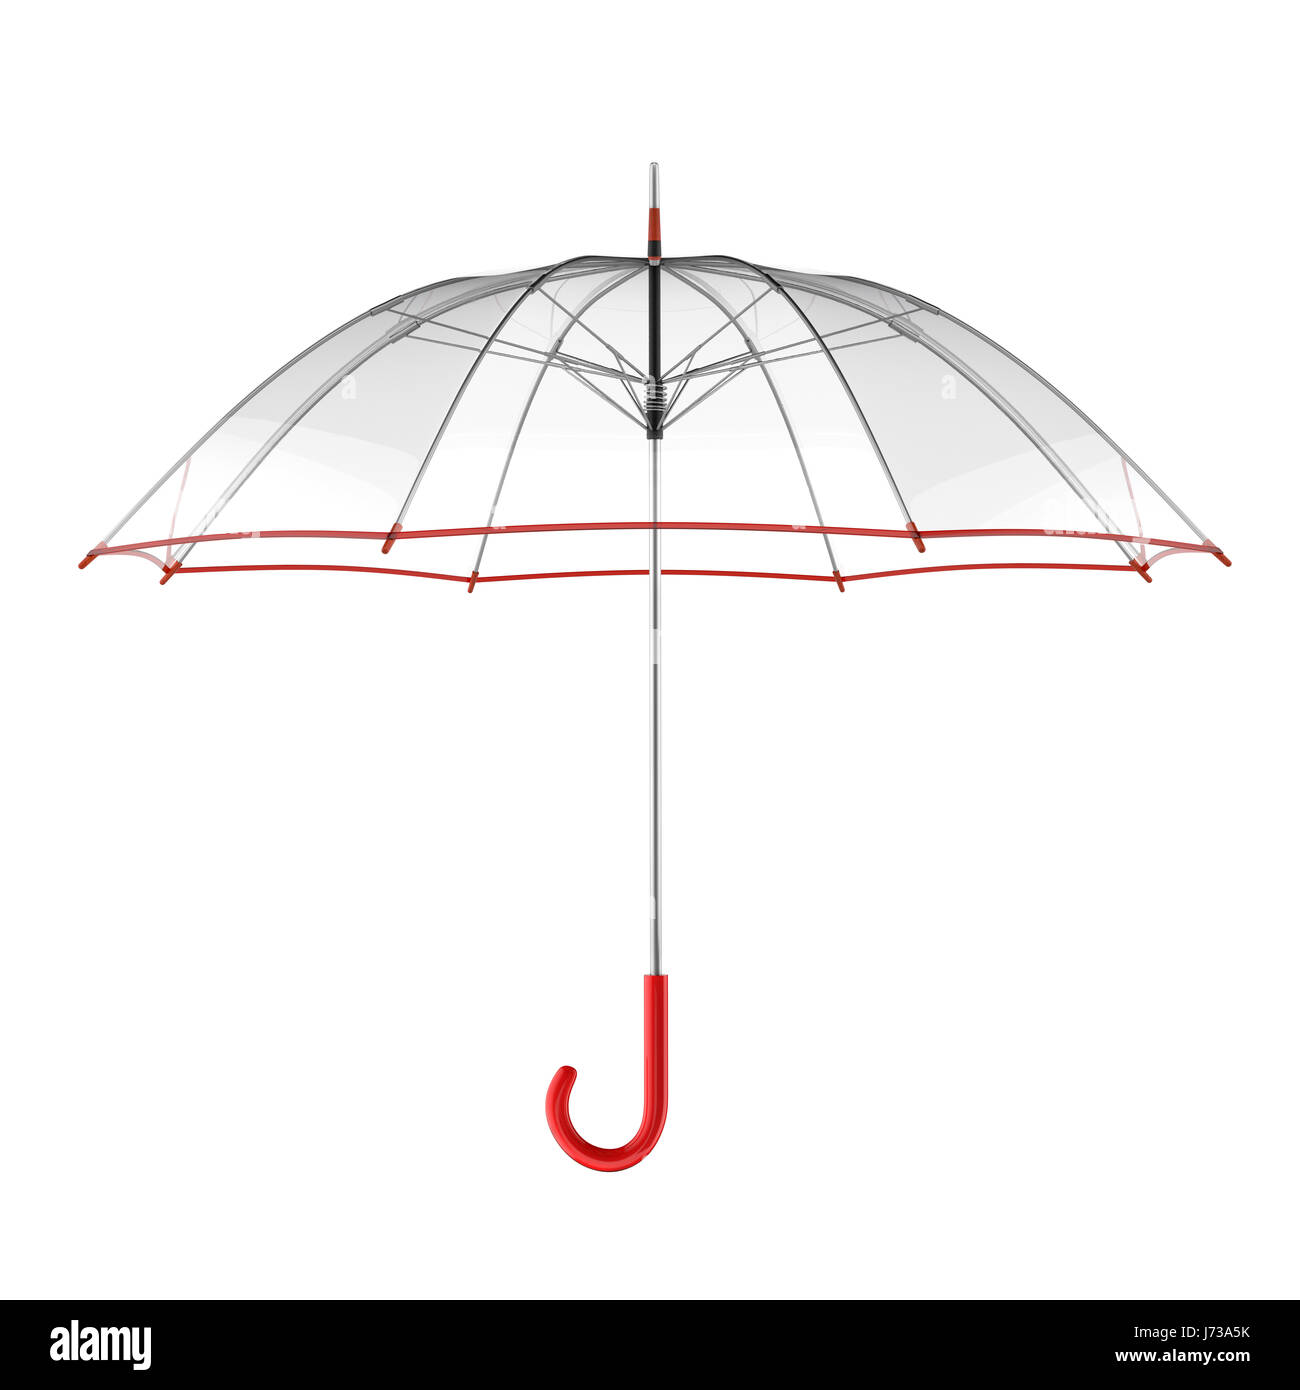 Paraguas transparente blanco - Bicos de Papel